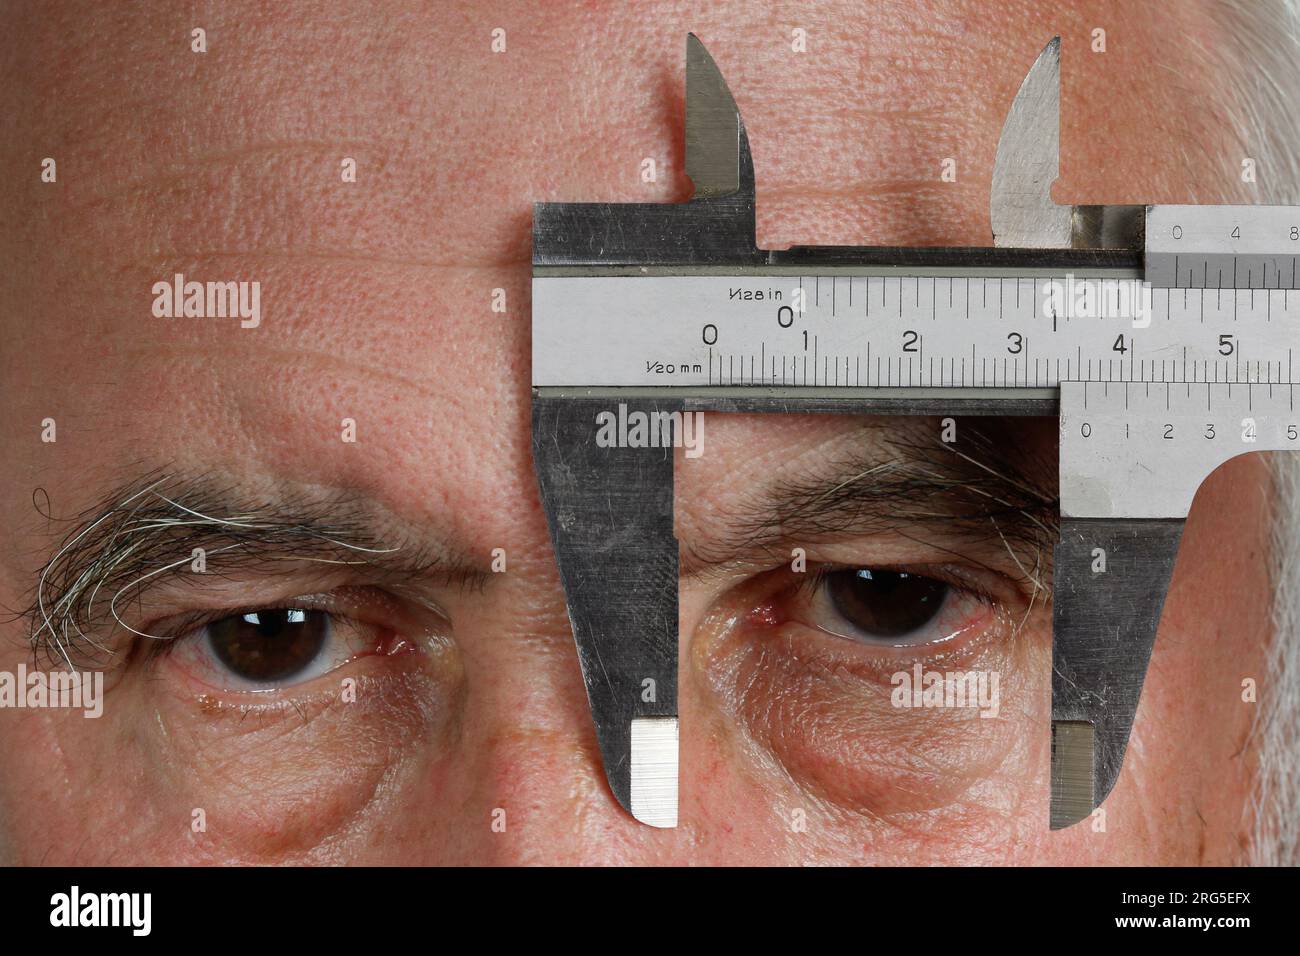 Senso delle proporzioni. Un uomo tiene un calibro davanti all'occhio sinistro e guarda tra le ganasce di misurazione. Foto Stock